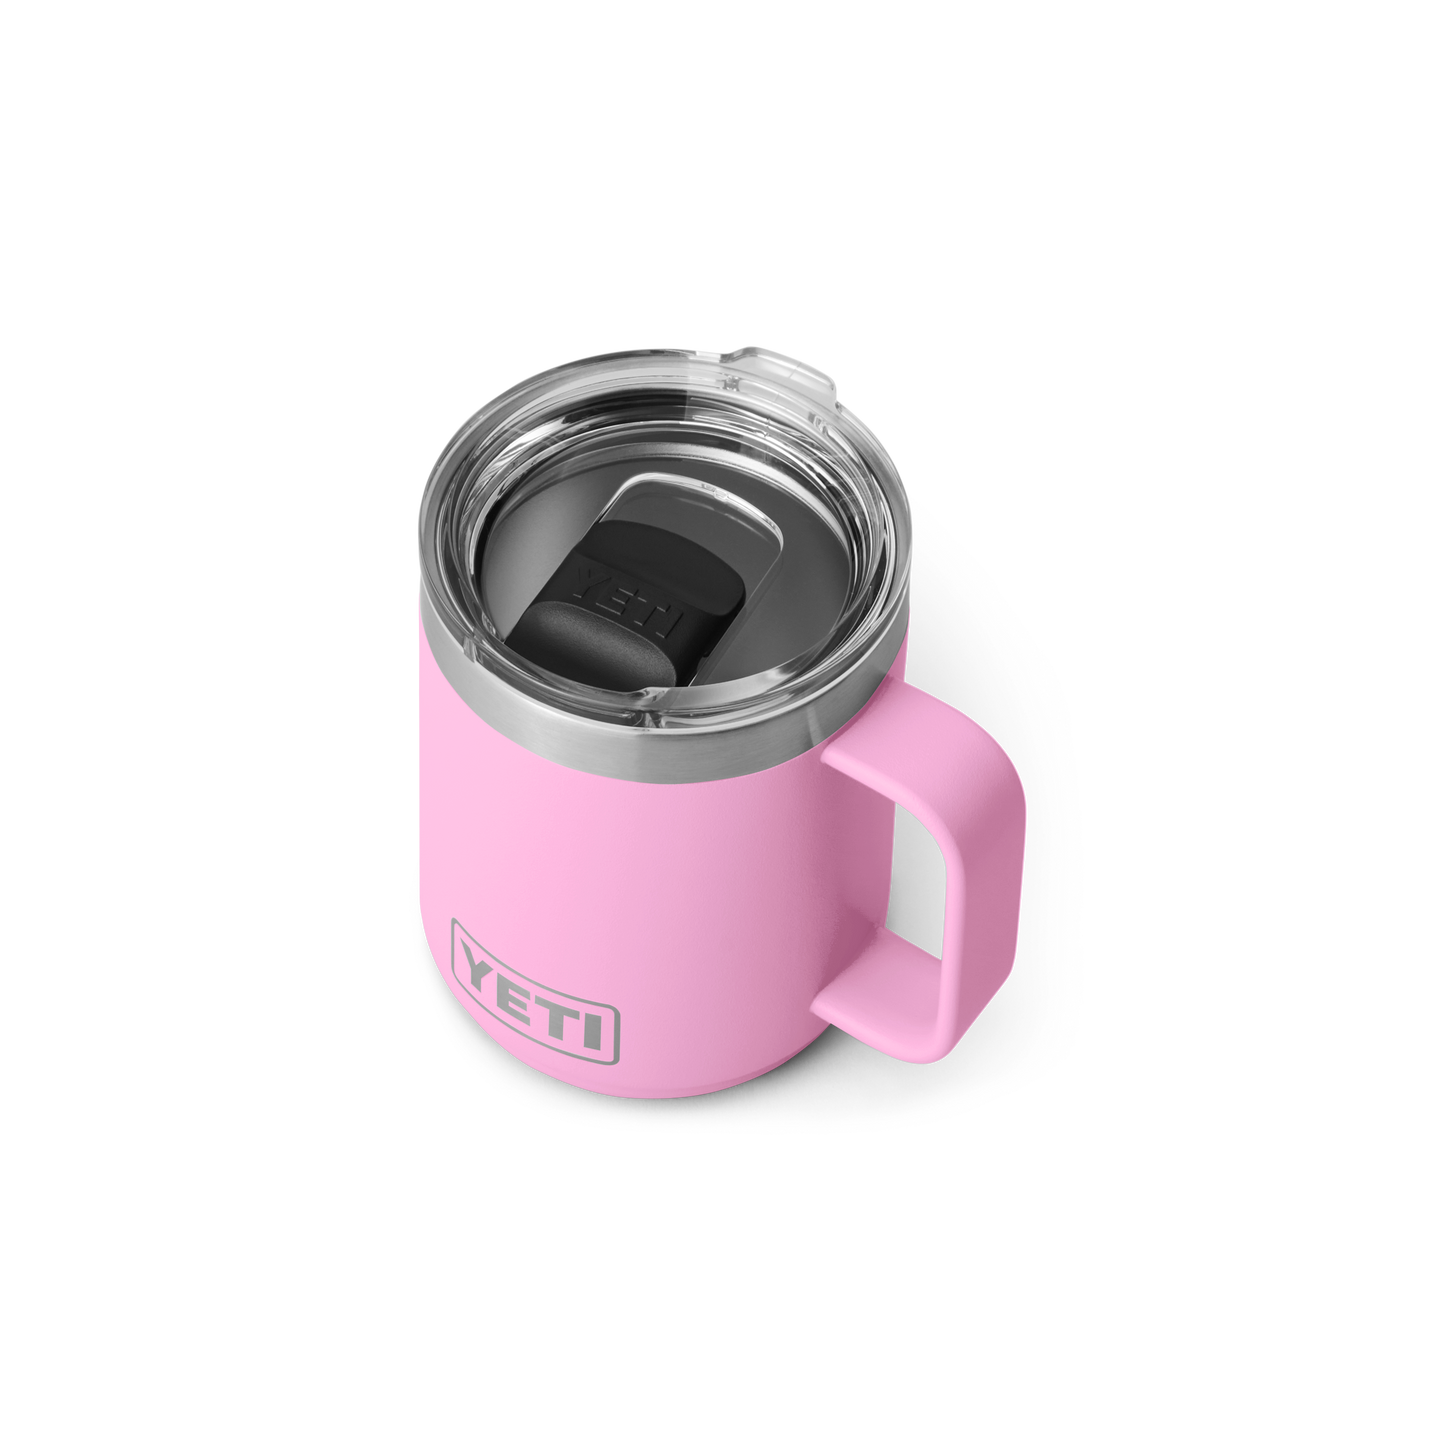 YETI Rambler® 10 oz (296 ml) Stackable Mug Power Pink